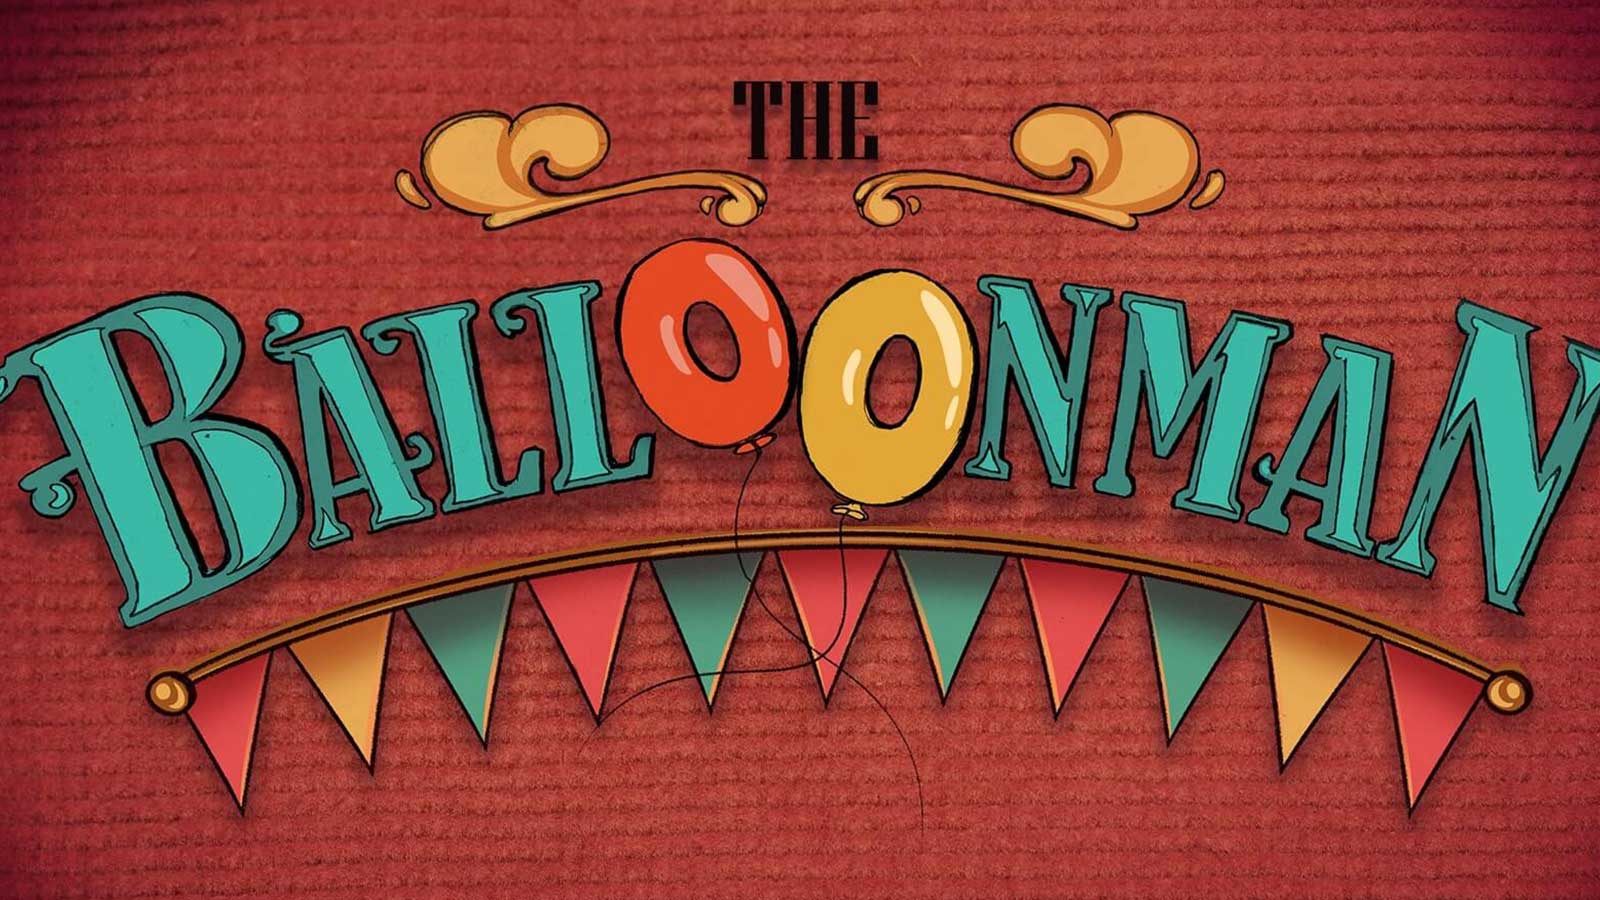 La tarjeta de presentación para la animación The Balloonman